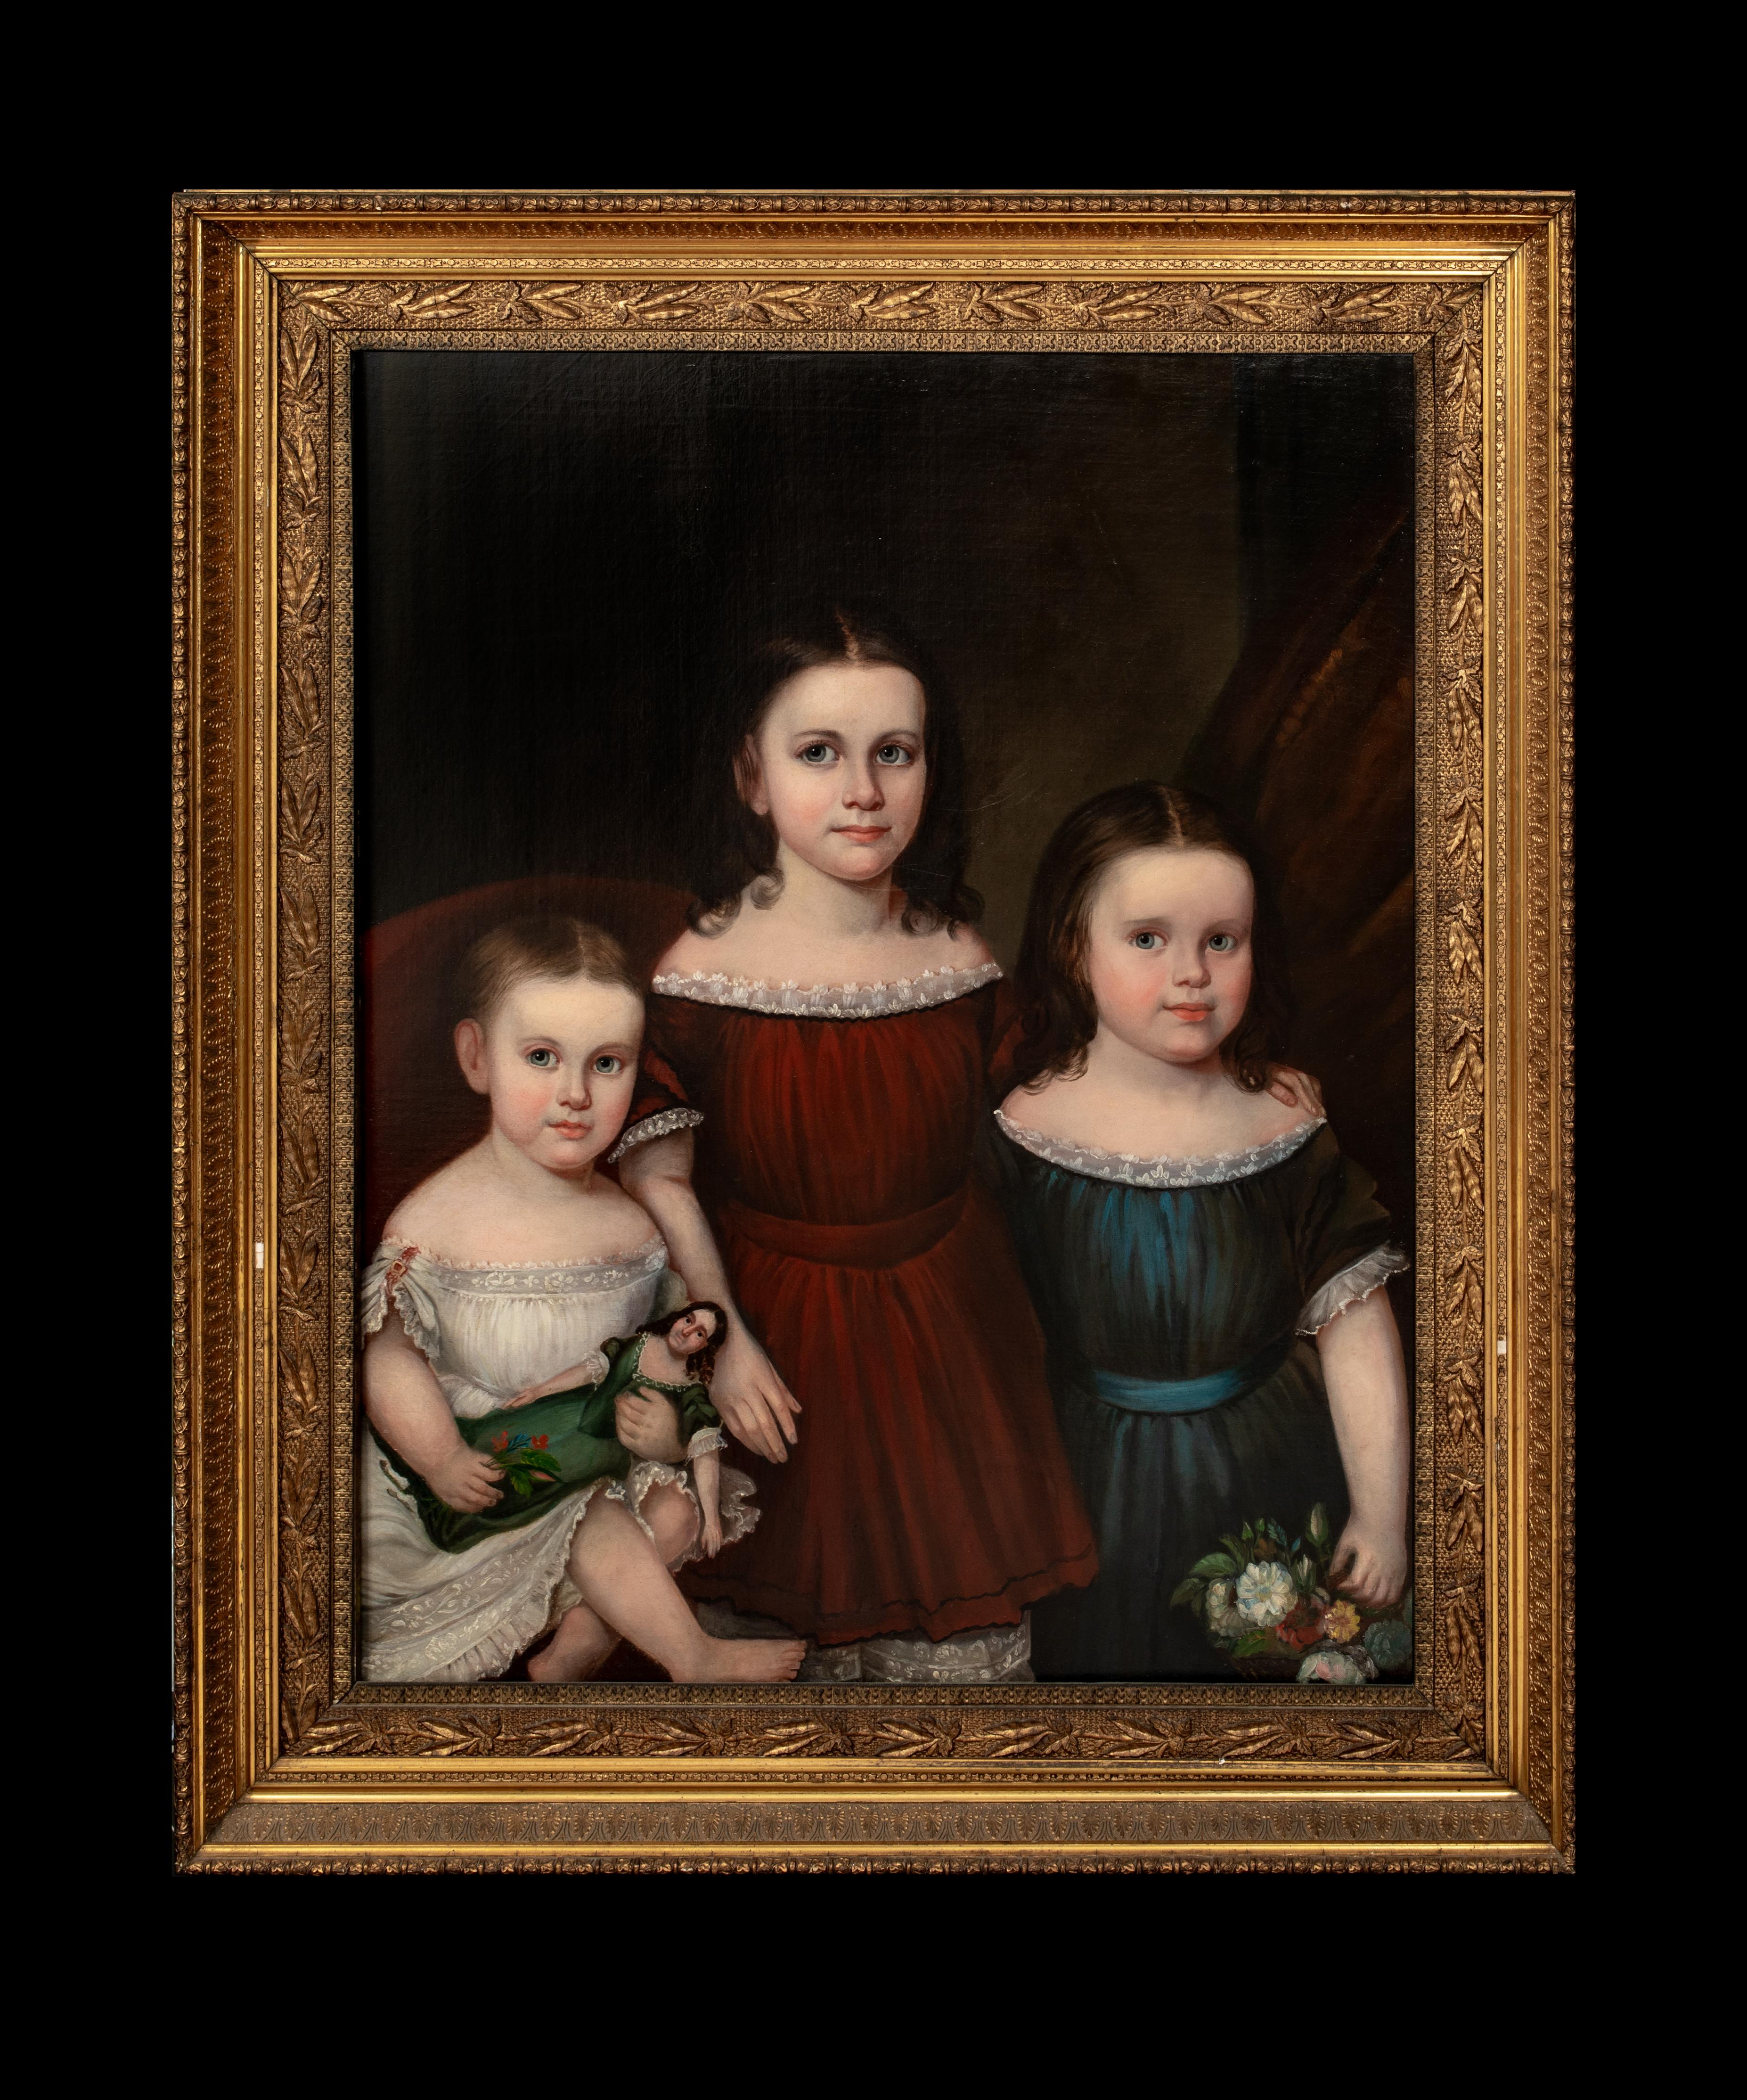 The Vanderbilt Children, 19th Century   American School  - Painting by Unknown